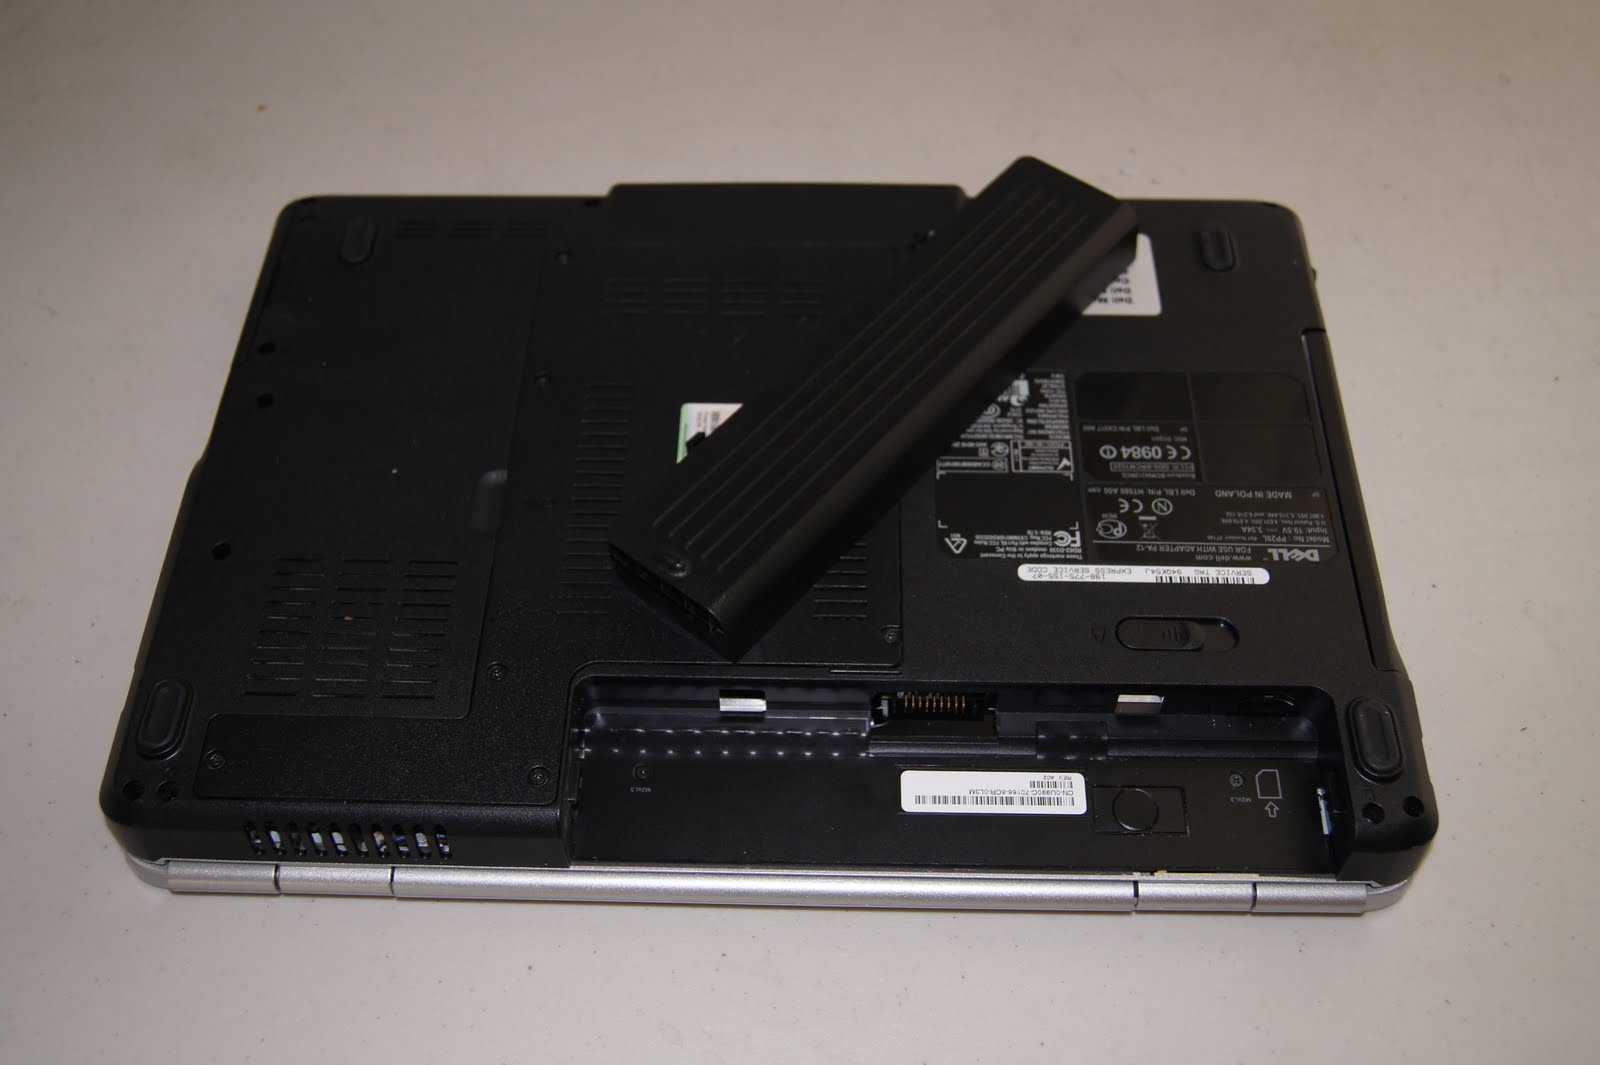  ~ Laptop Screens  Laptop Screen Replacement  Laptop Screen Repair